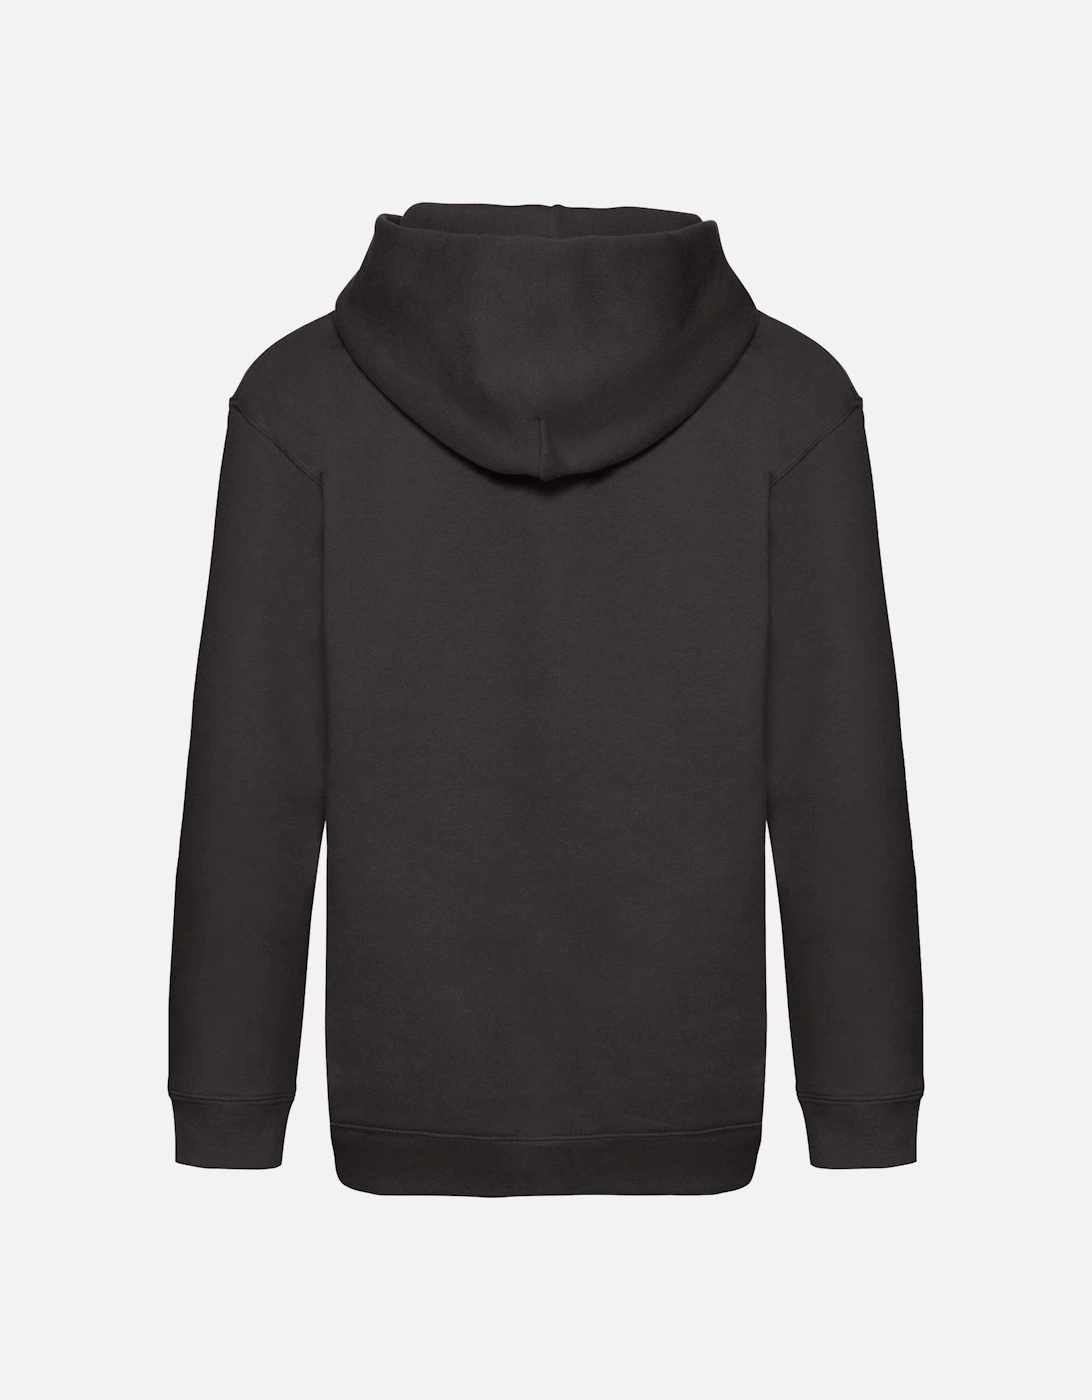 Kids Unisex Premium 70/30 Hooded Sweatshirt / Hoodie, 5 of 4